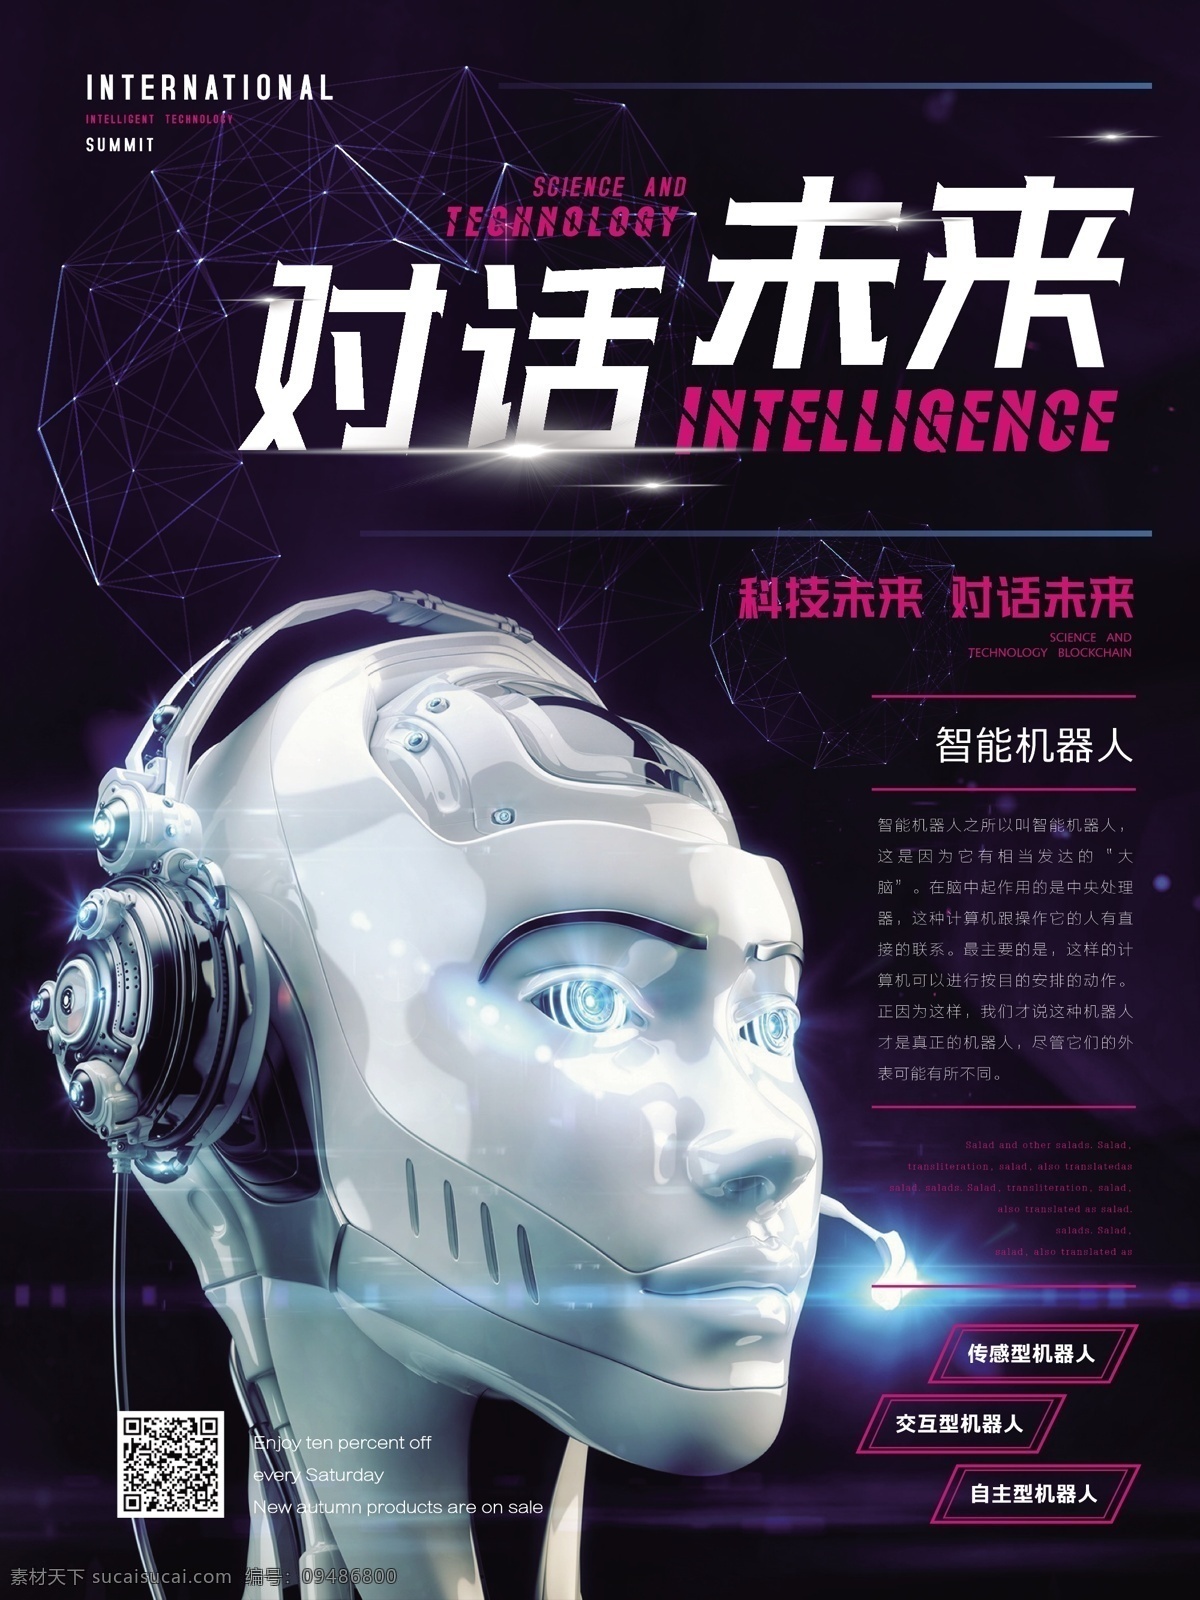 科技 风 对话 未来 智能 机器人 海报 主题 现代感 宣传 科技风 对话未来 智能机器人